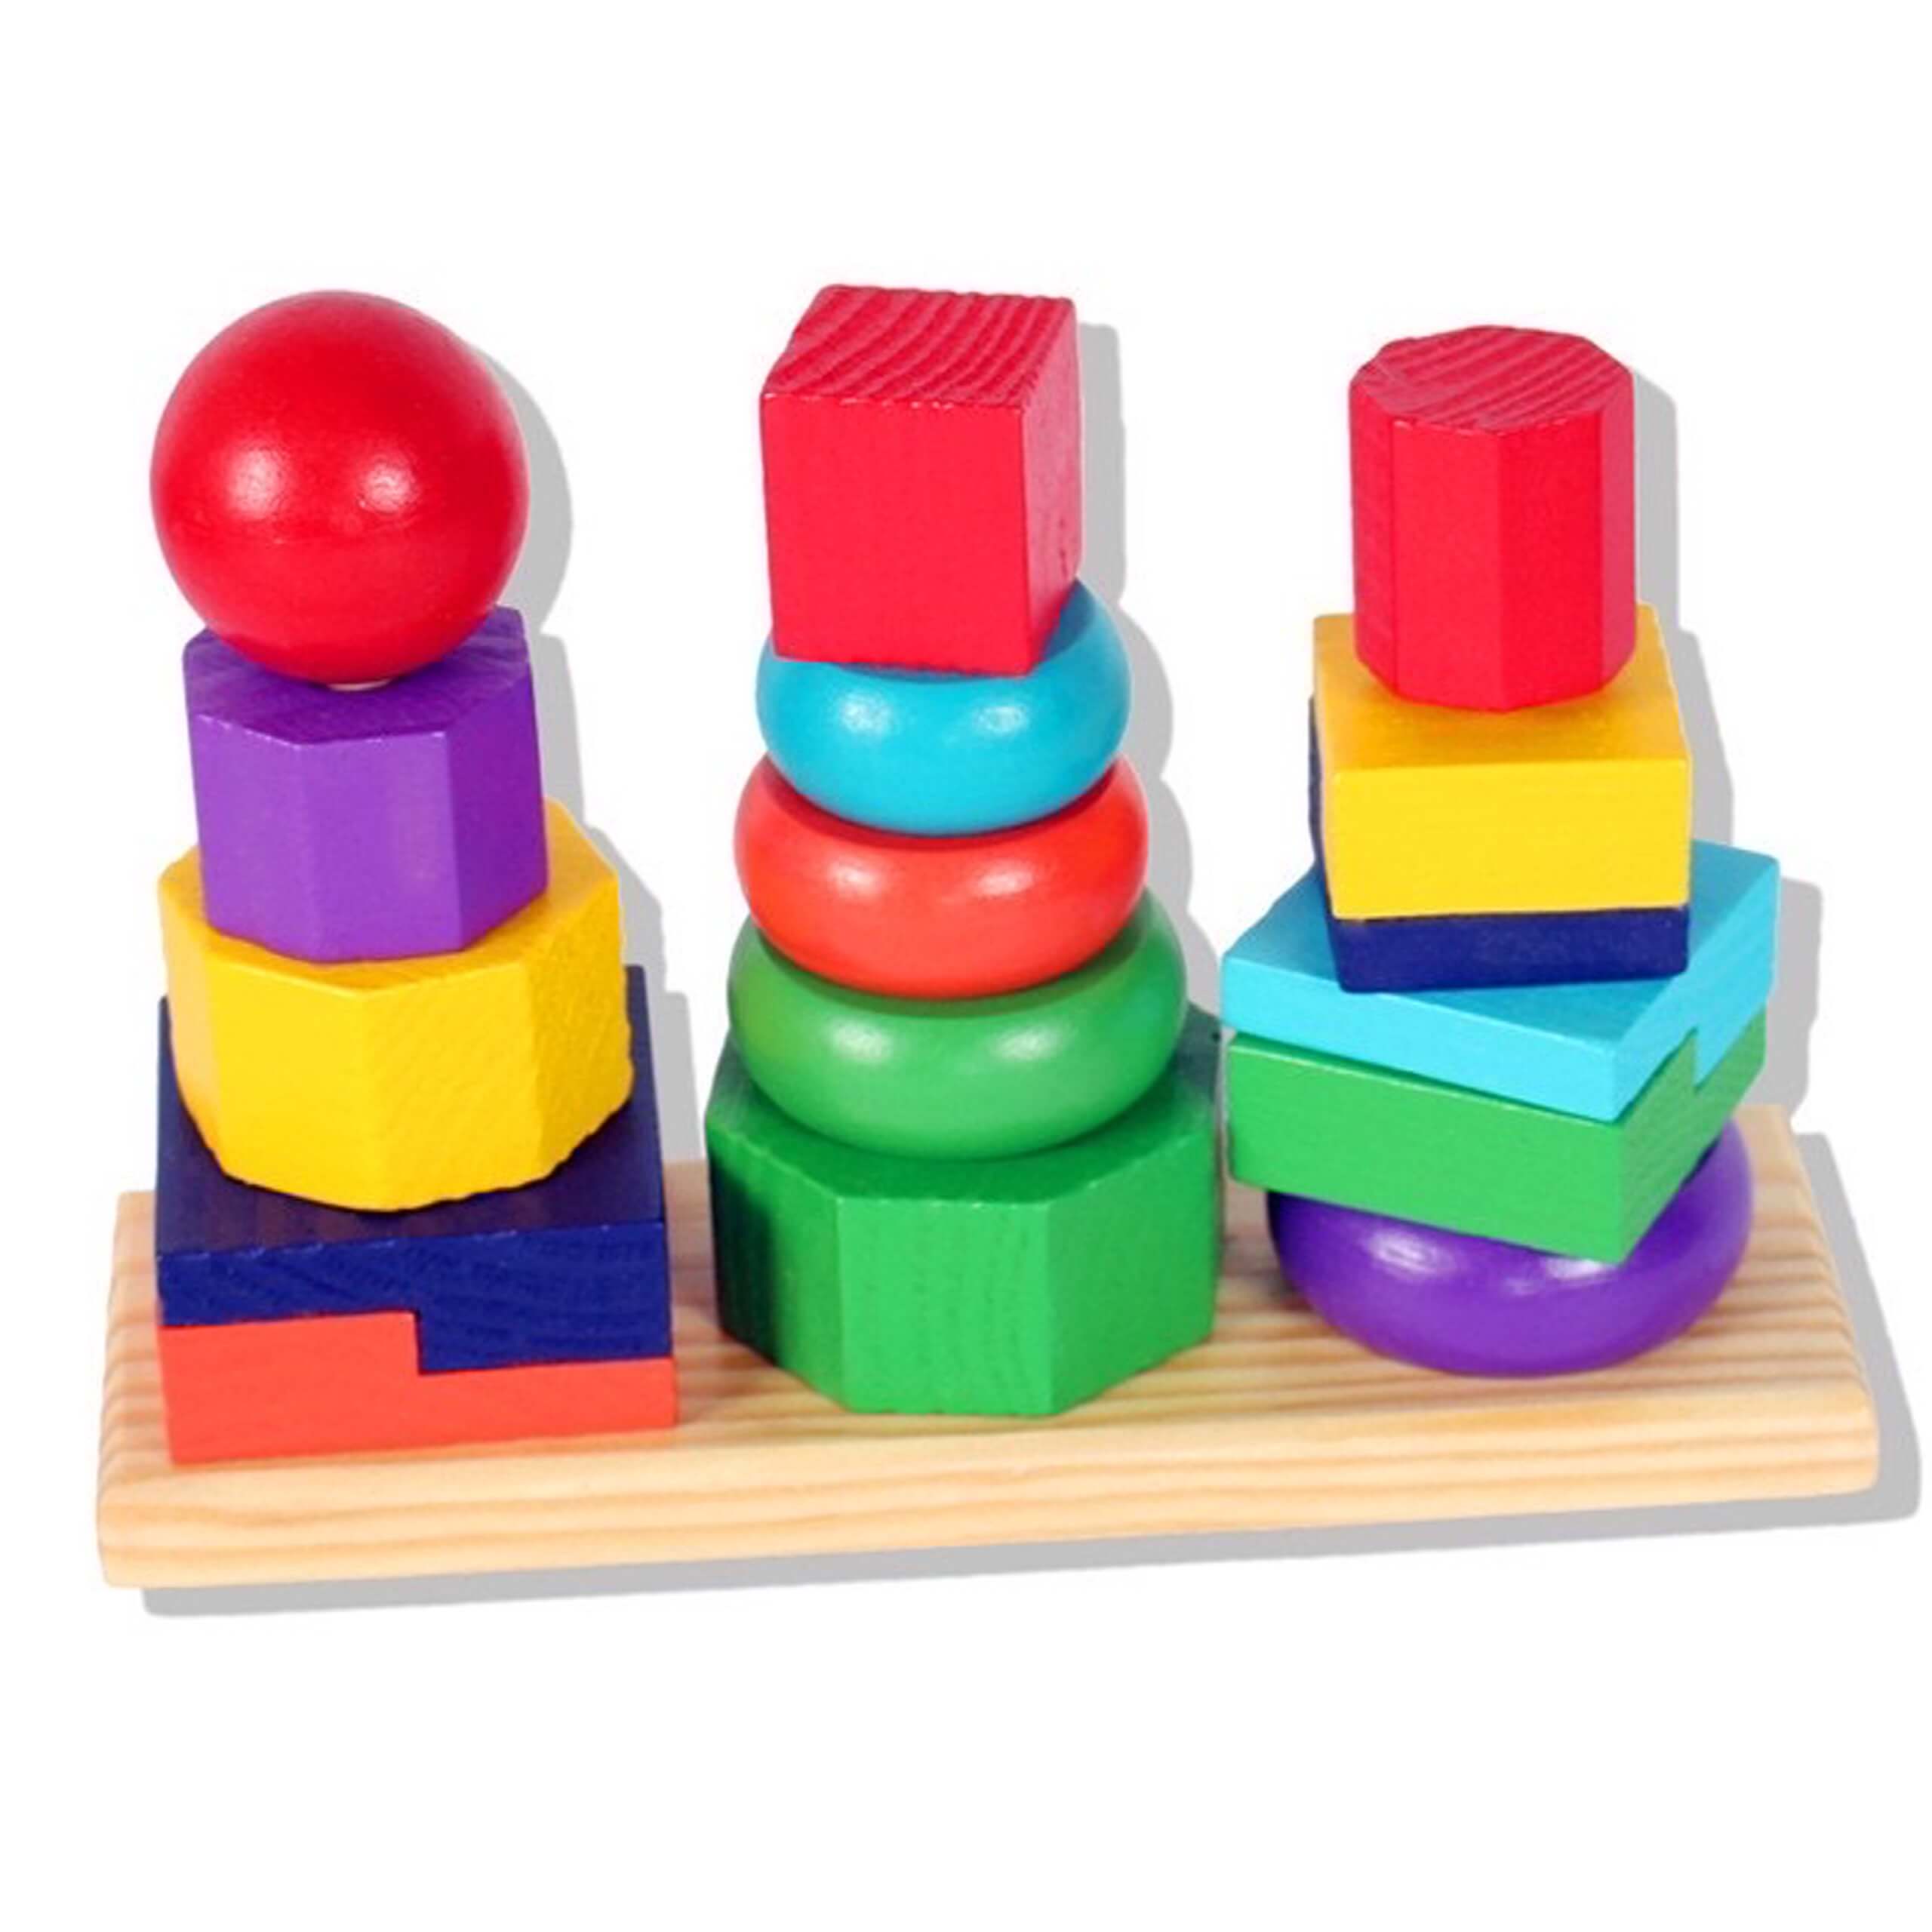 Đồ chơi gỗ tháp cầu vồng 7 màu 3 cọc cho bé